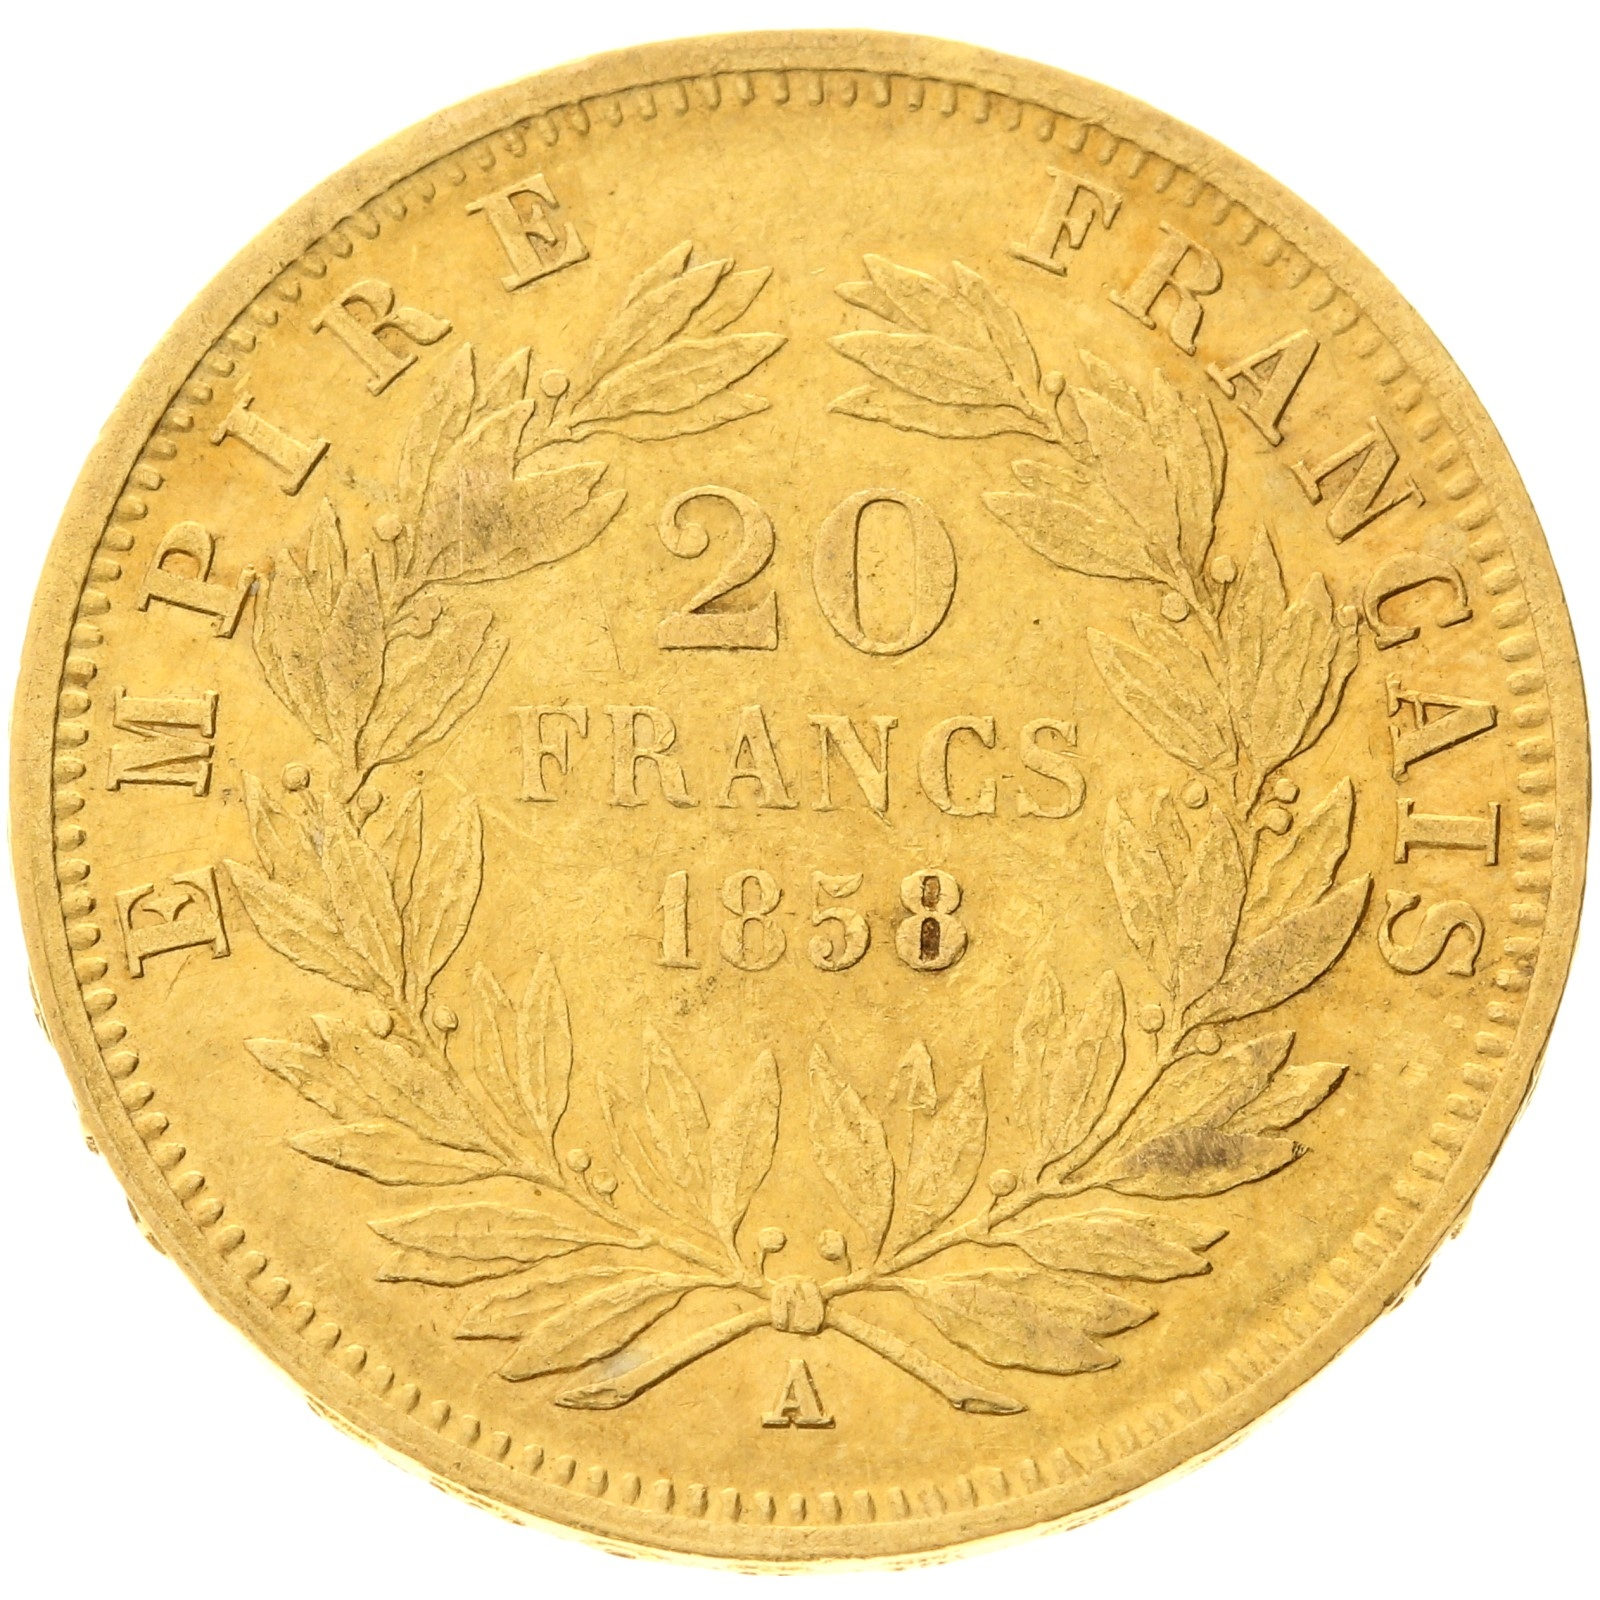 France - 20 Francs - 1858 - A - Napoleon III 